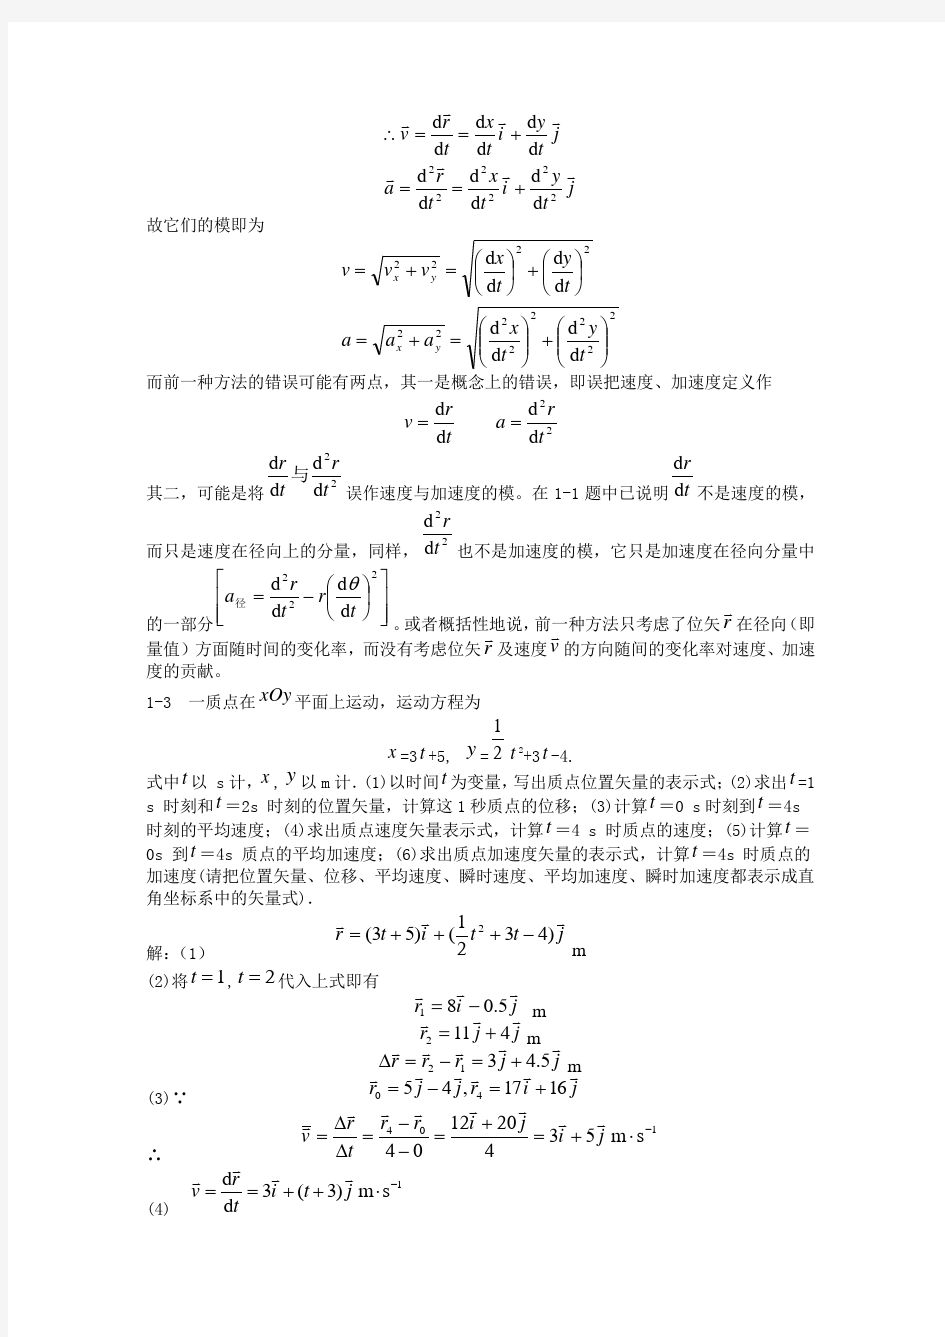 大学物理学课后习题答案-赵近芳-全